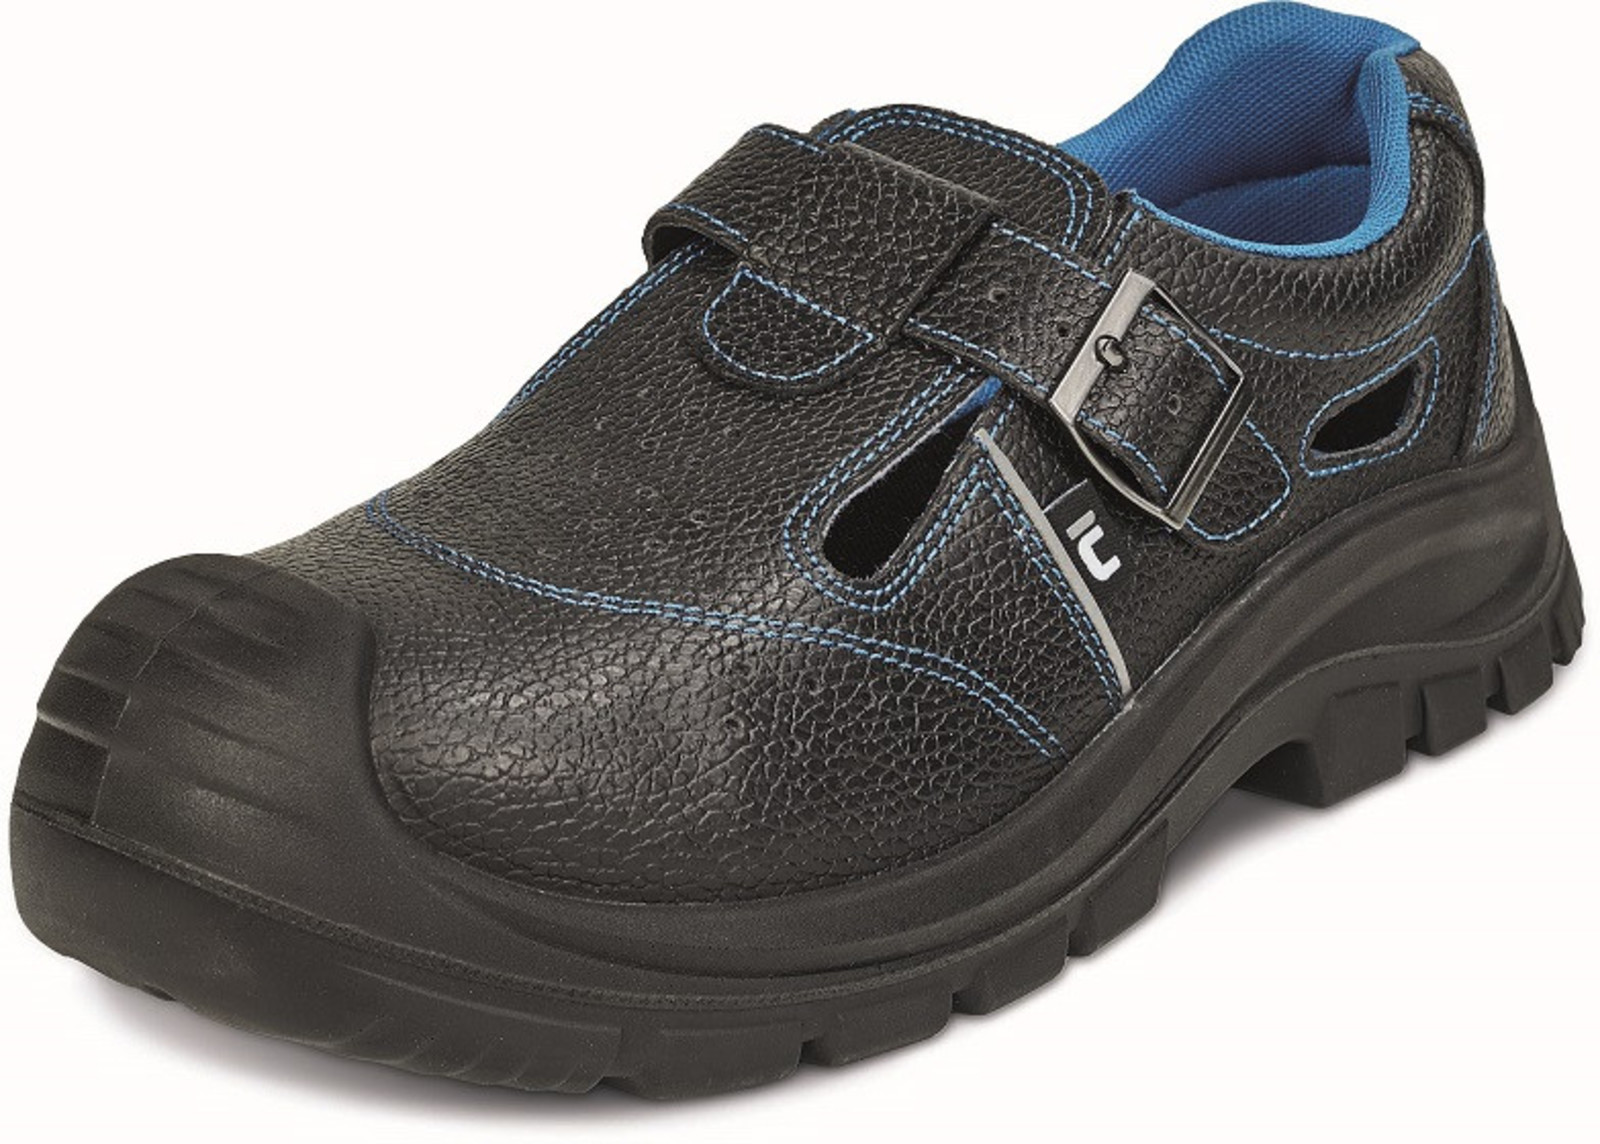 Bezpečnostné sandále Raven XT S1P - veľkosť: 40, farba: čierna